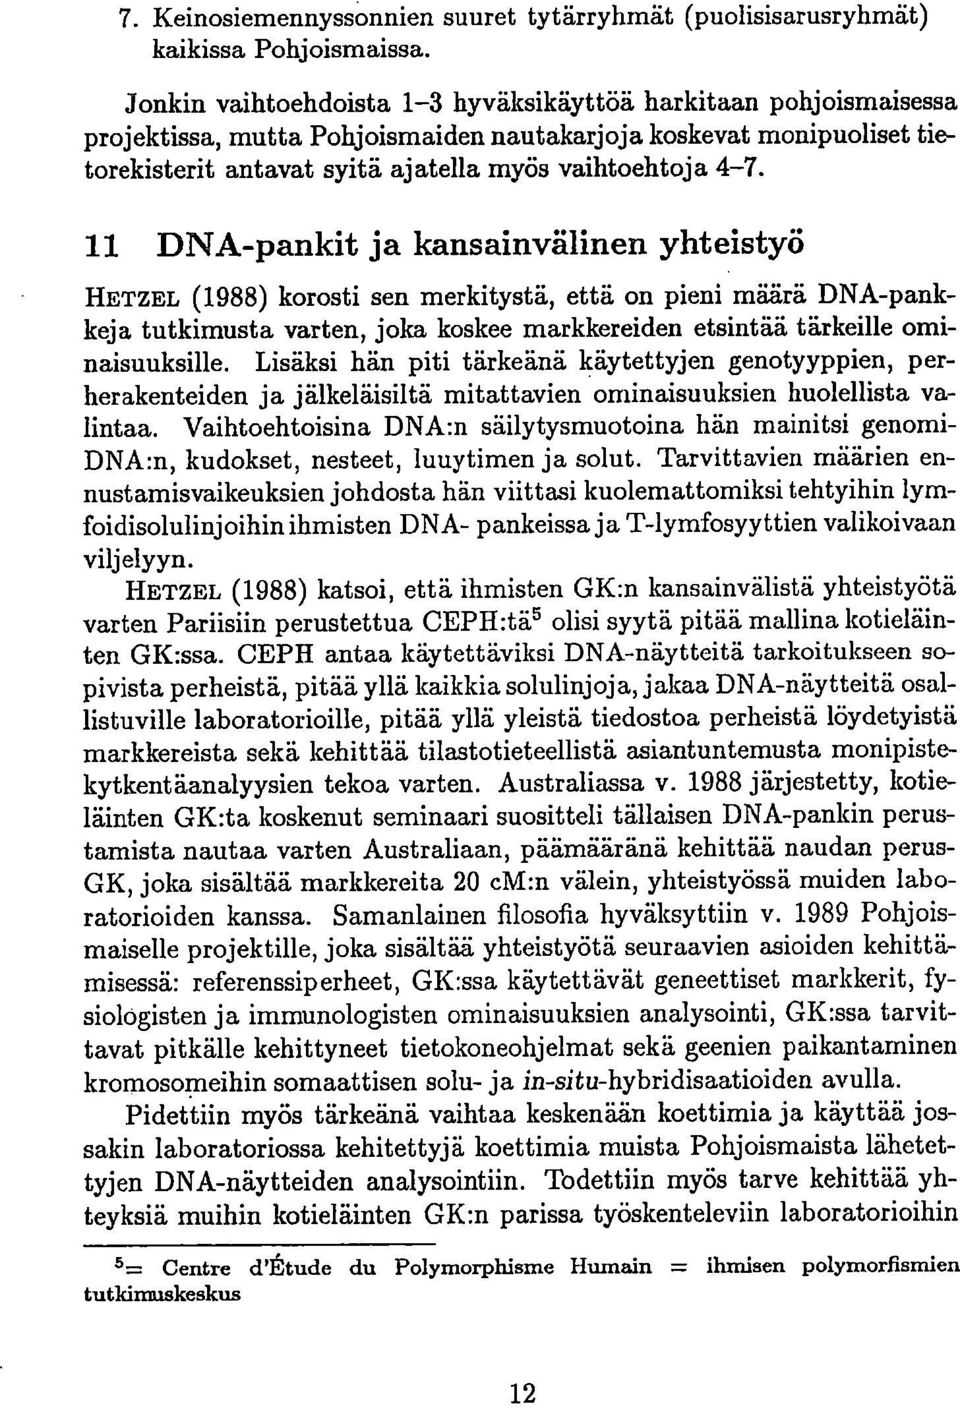 11 DNA-pankit ja kansainvälinen yhteistyö HETZEL (1988) korosti sen merkitystä, että on pieni määrä DNA-pankkeja tutkimusta varten, joka koskee markkereiden etsintää tärkeille ominaisuuksille.